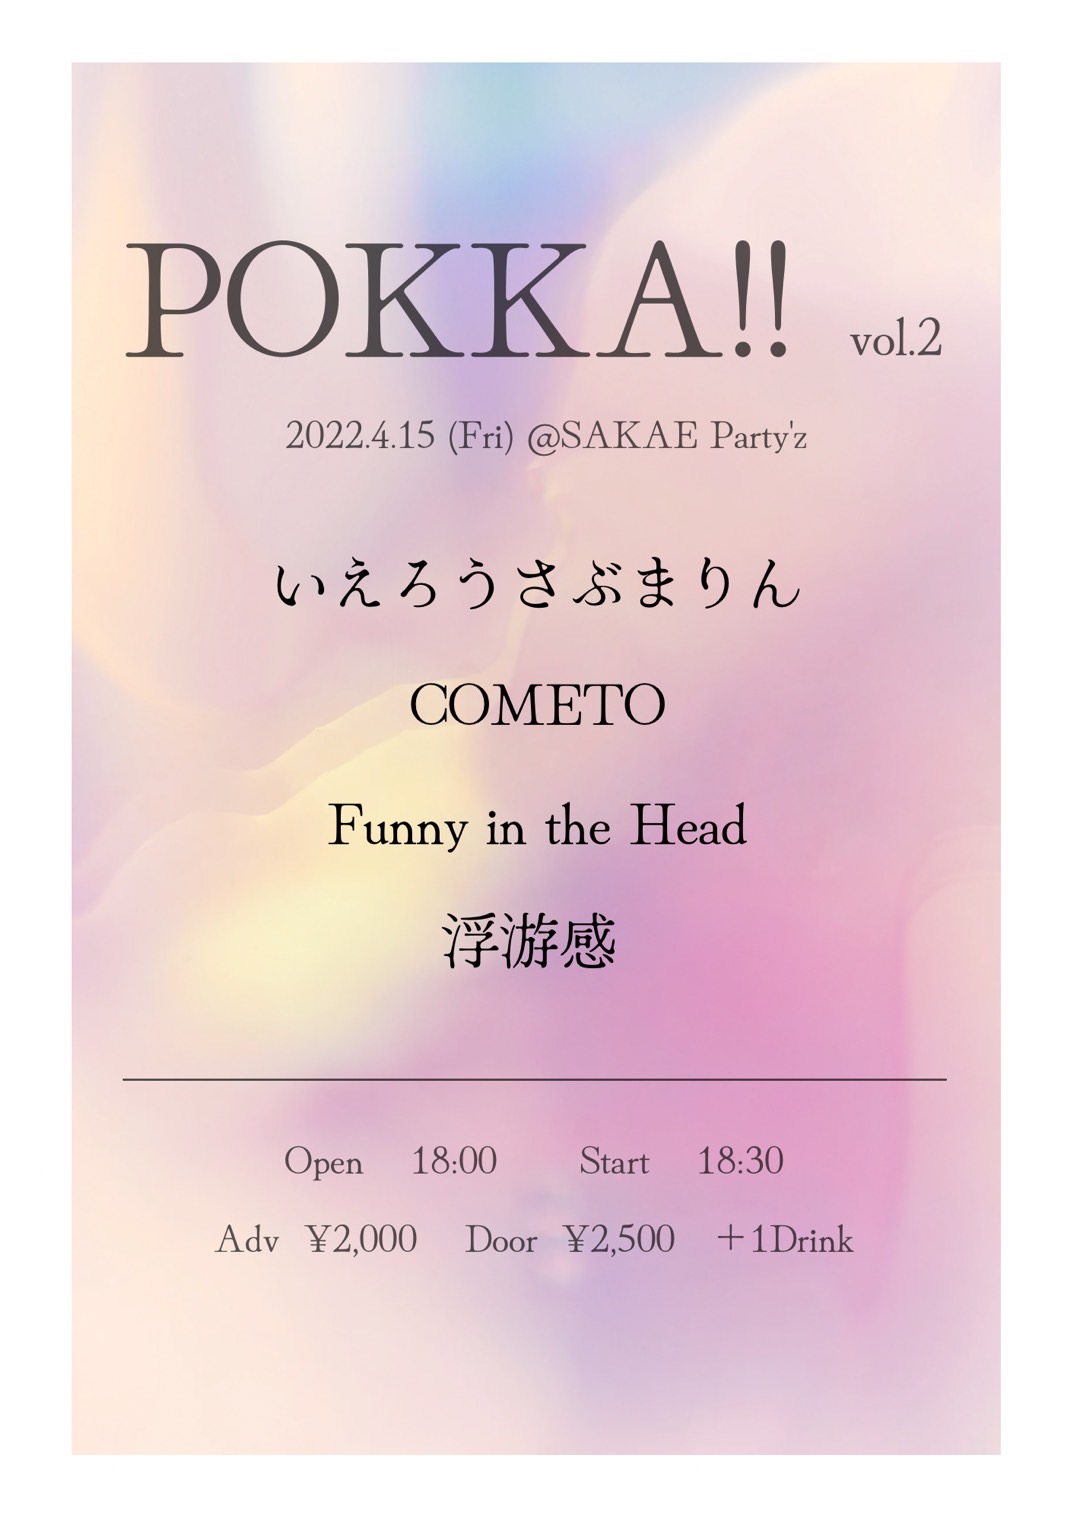 Pokka!! vol.2